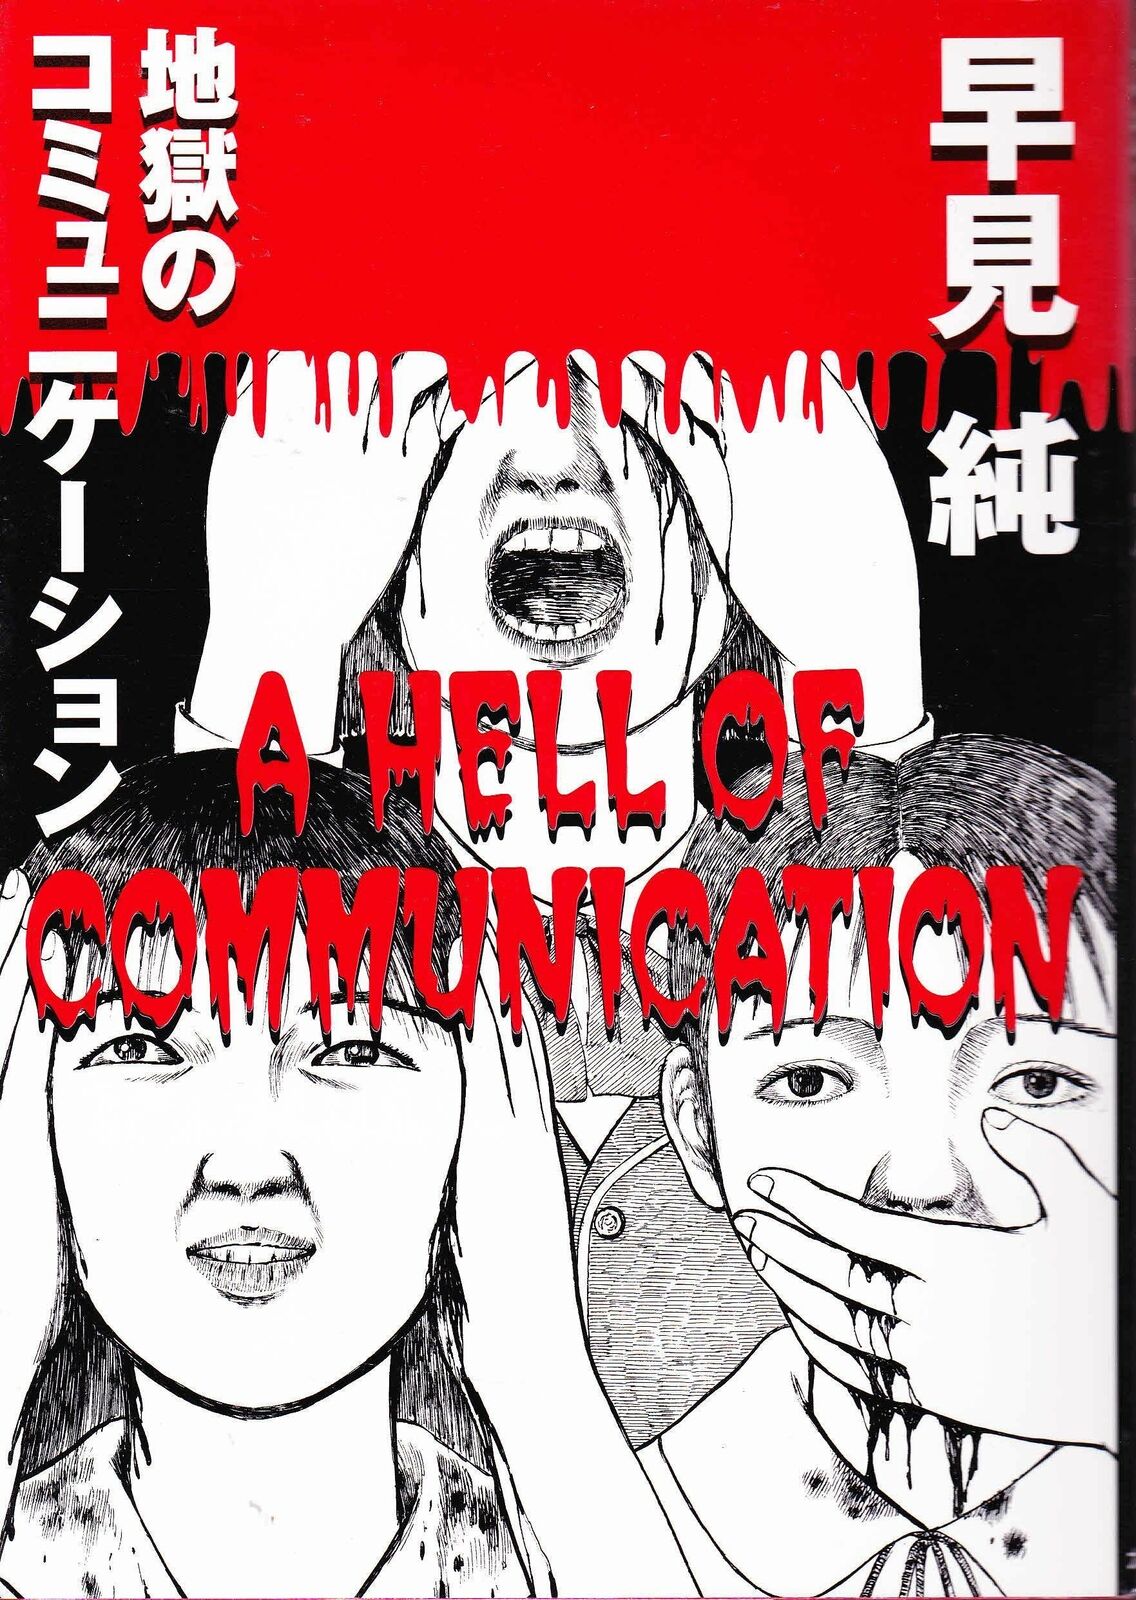 JUN HAYAMI / A HELL OF COMMUNICATION / MANGA / OHTA COMICS